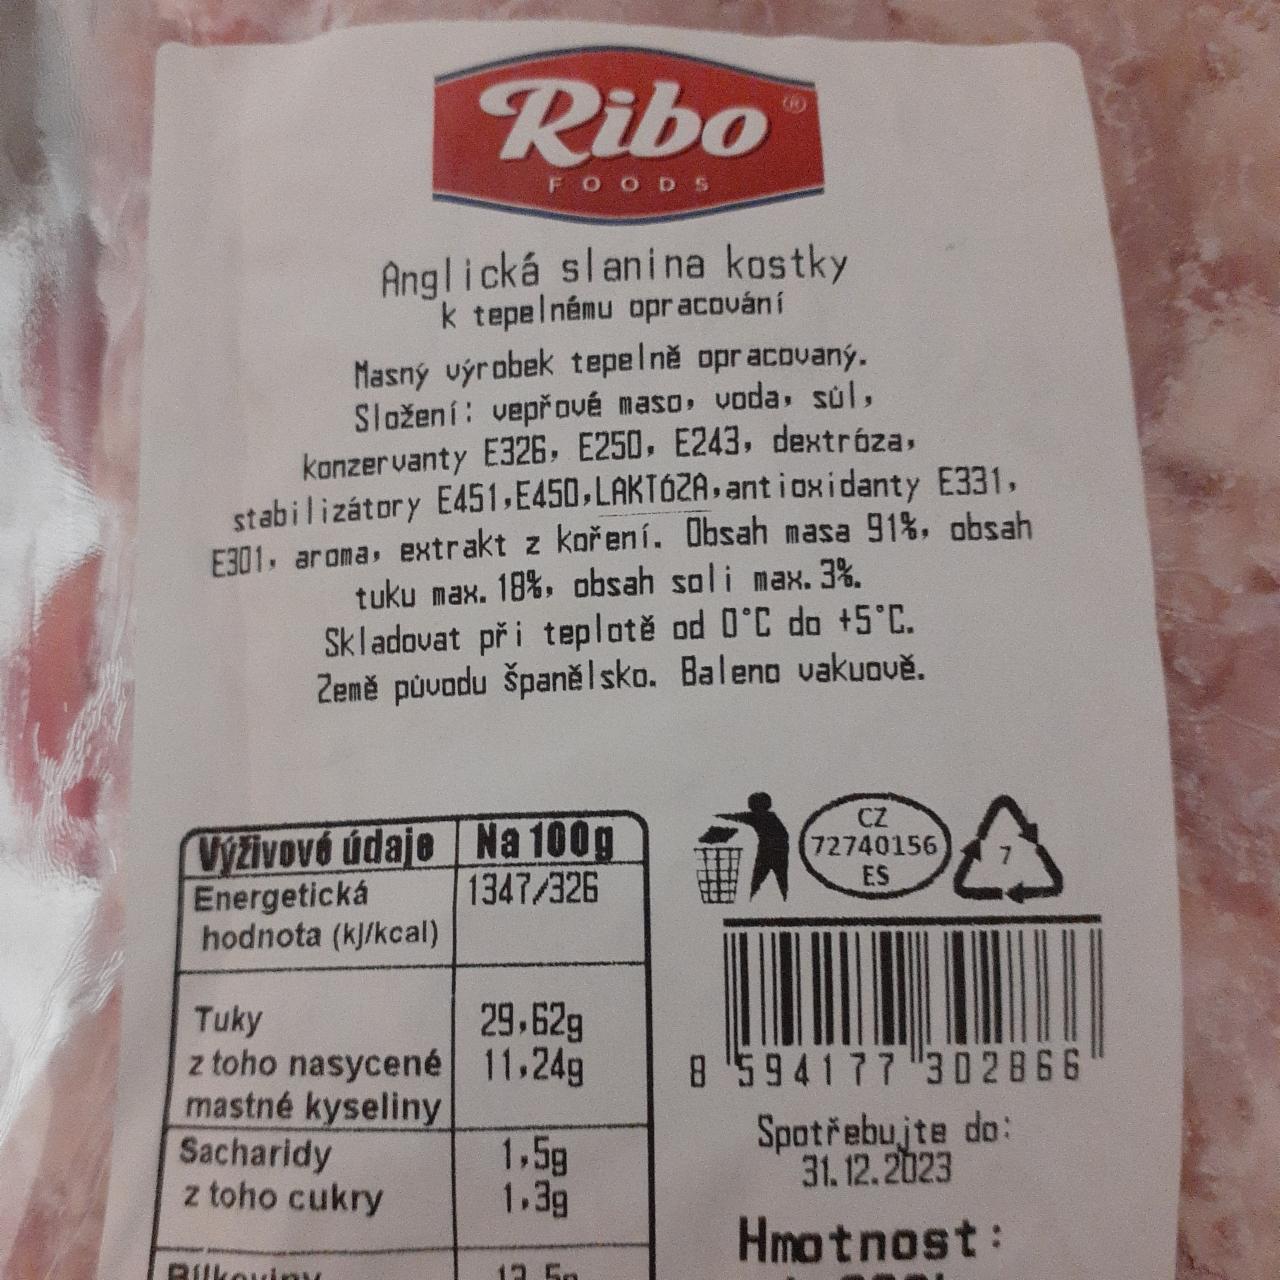 Fotografie - Anglická slanina kostky Ribo foods